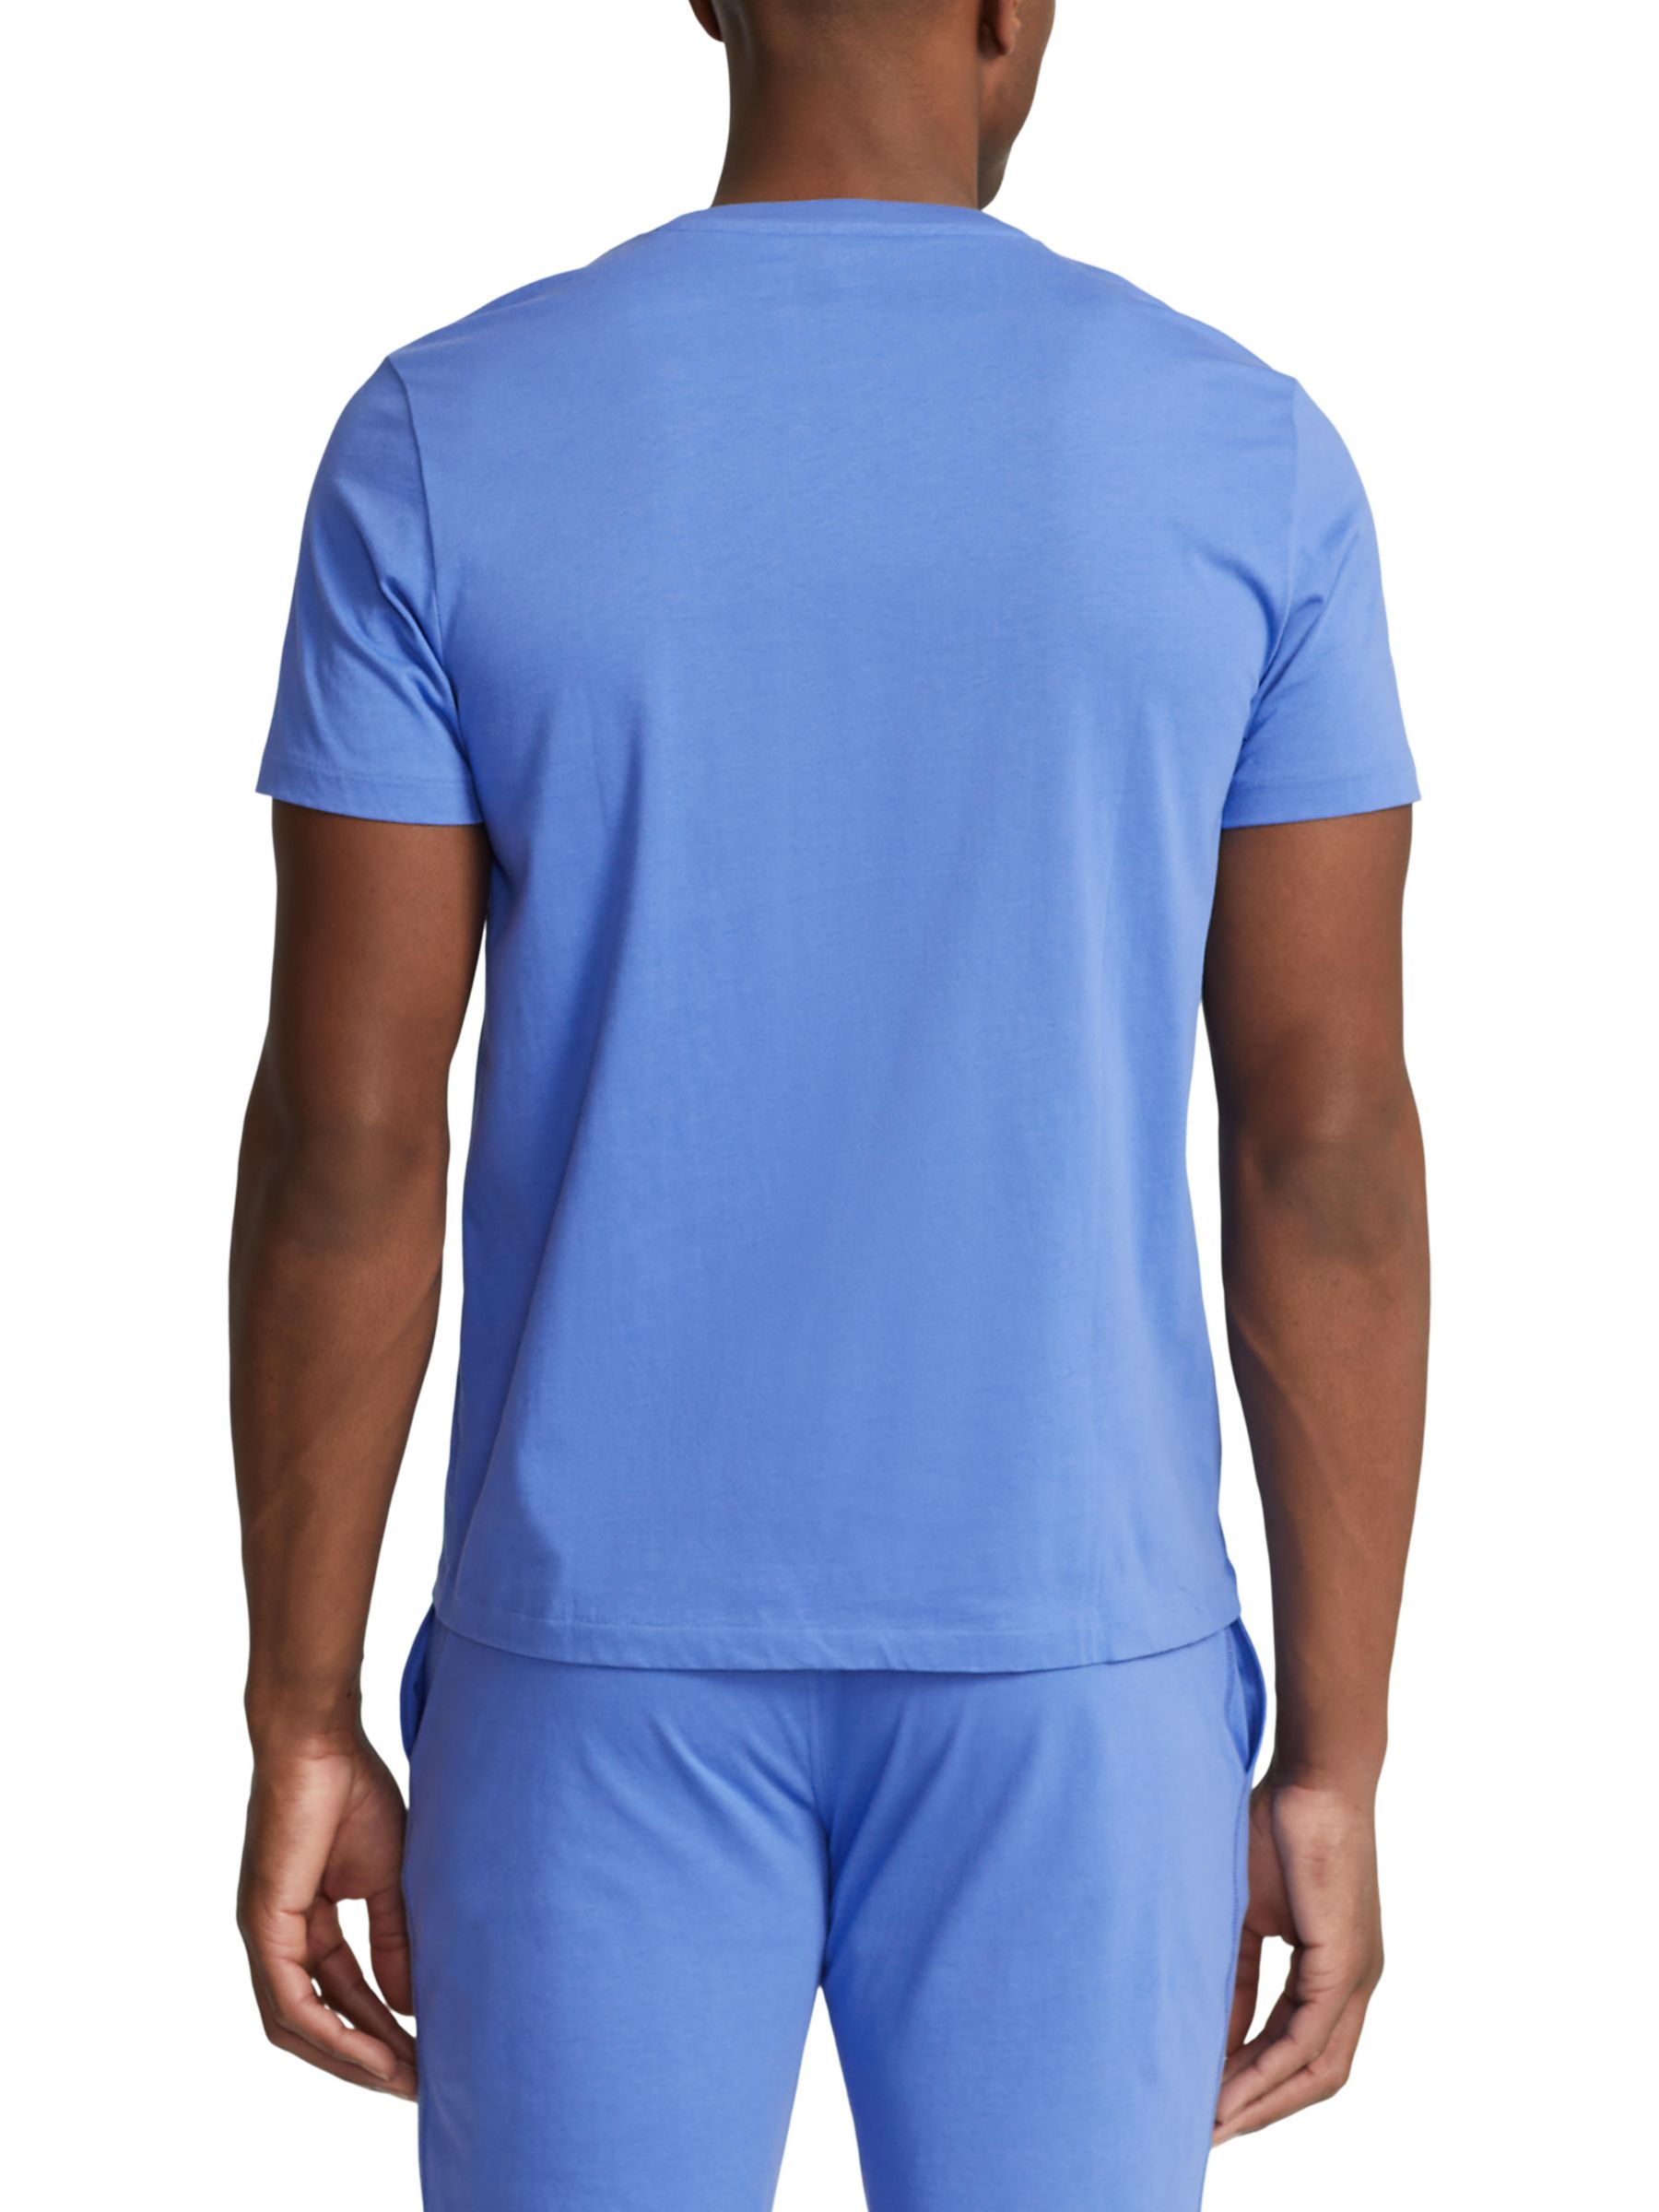 Ralph Lauren Logo Cotton Jersey Sleep Shirt, Blue/White, S